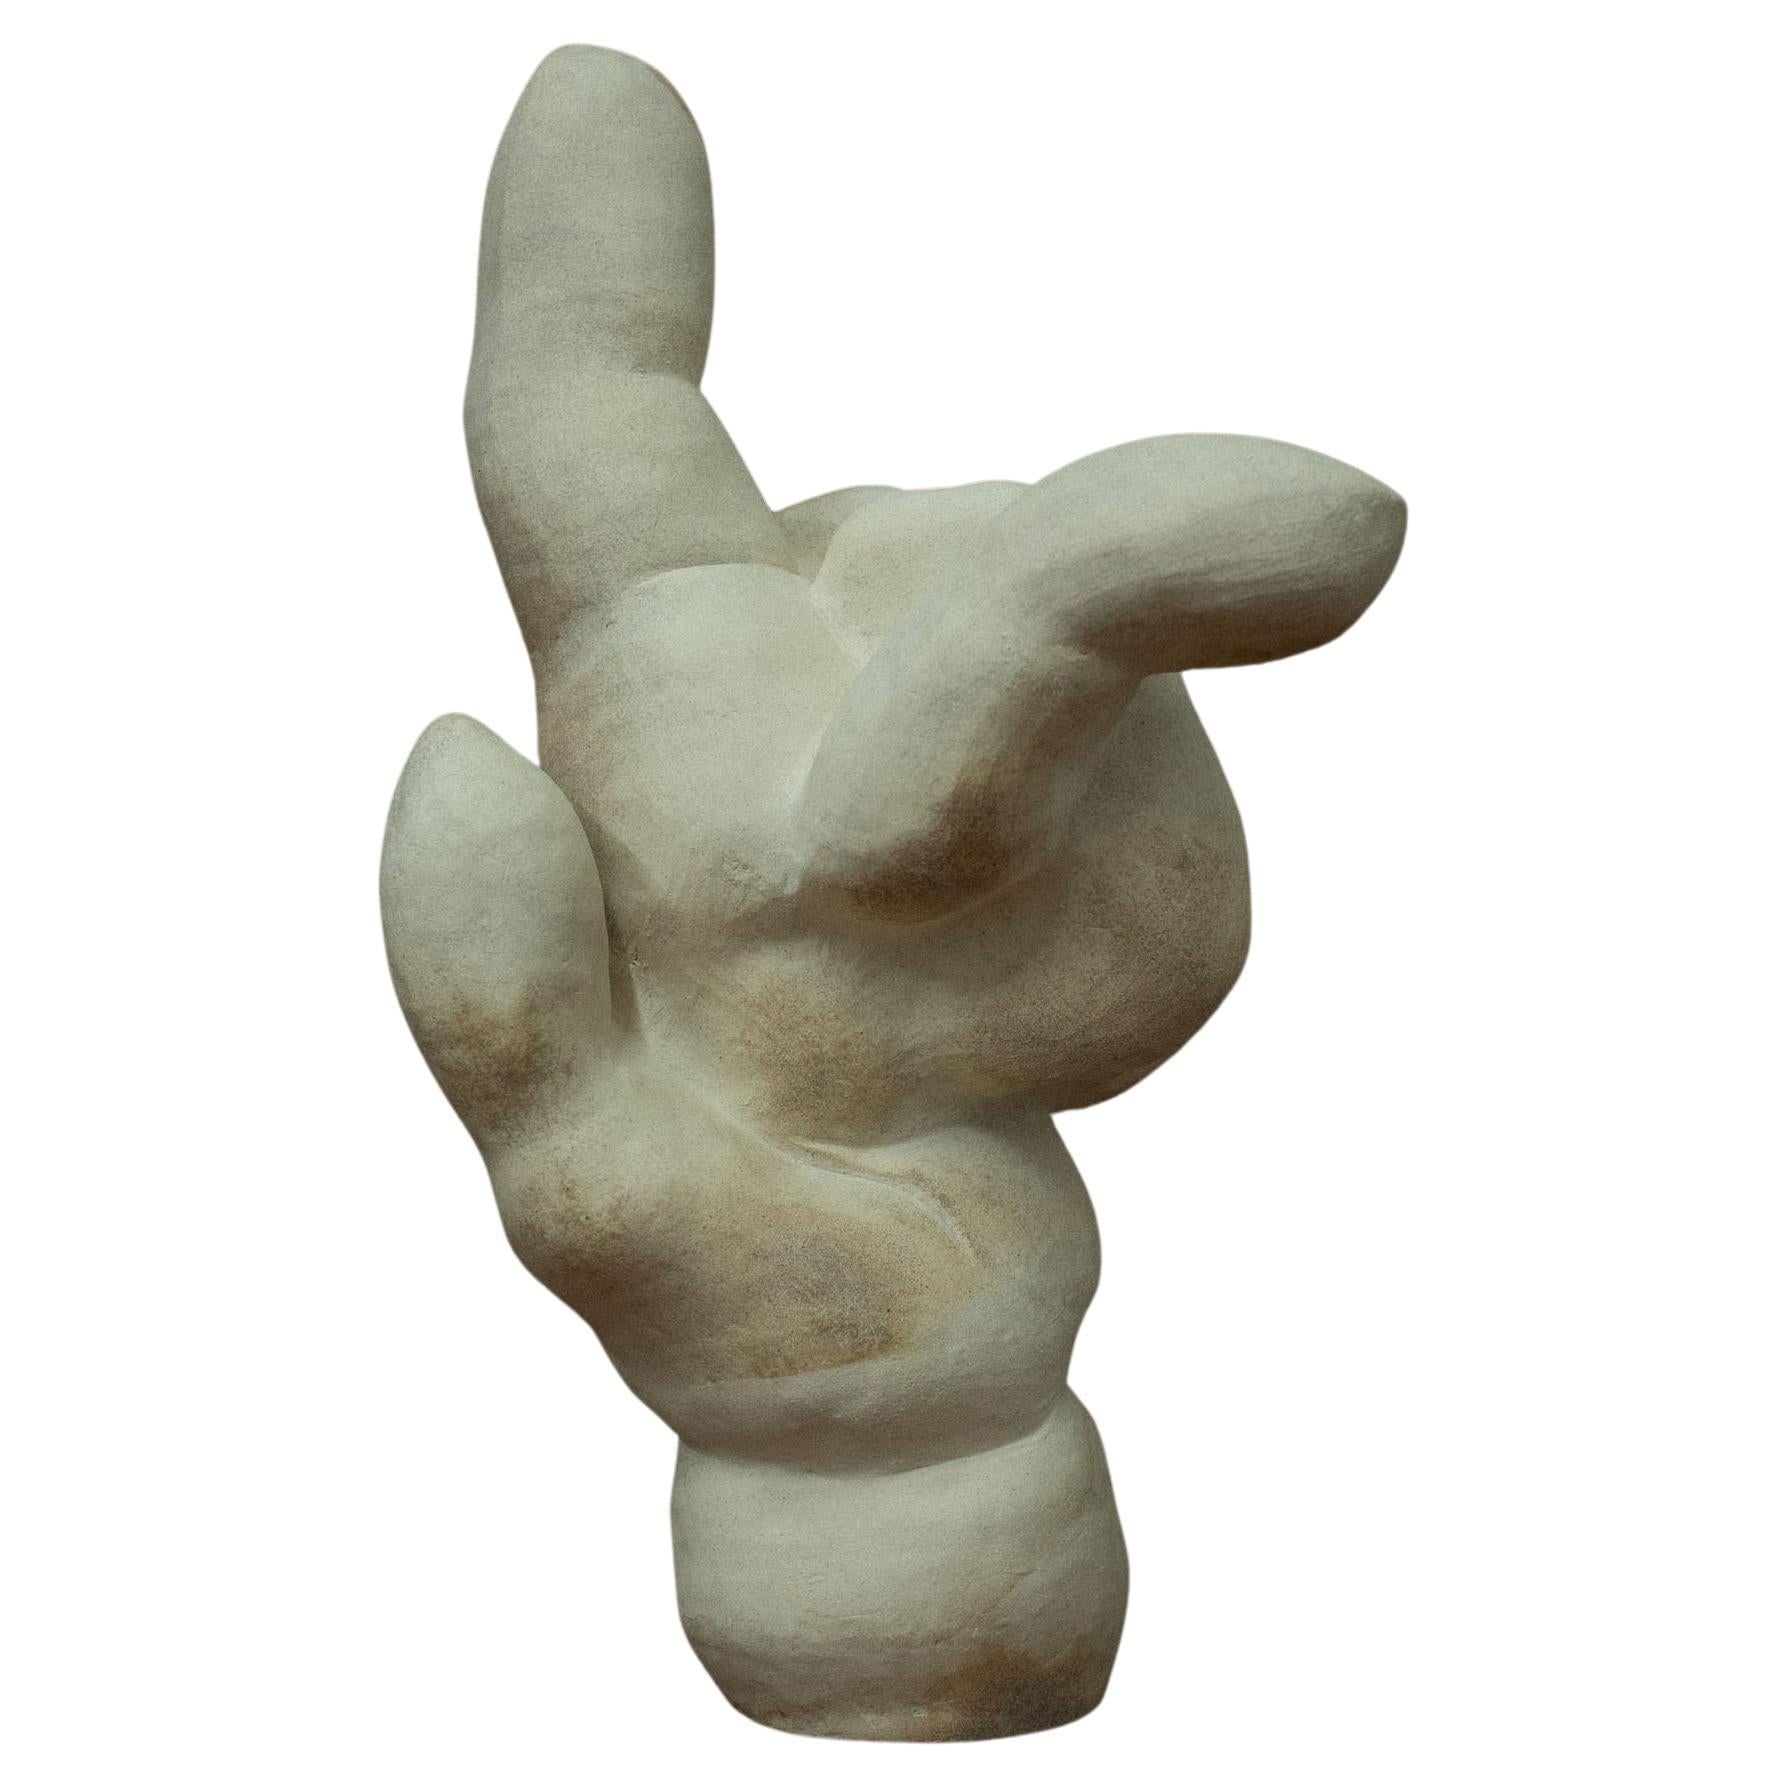 Natürliche klappbare Handskulptur des gewöhnlichen Körpers